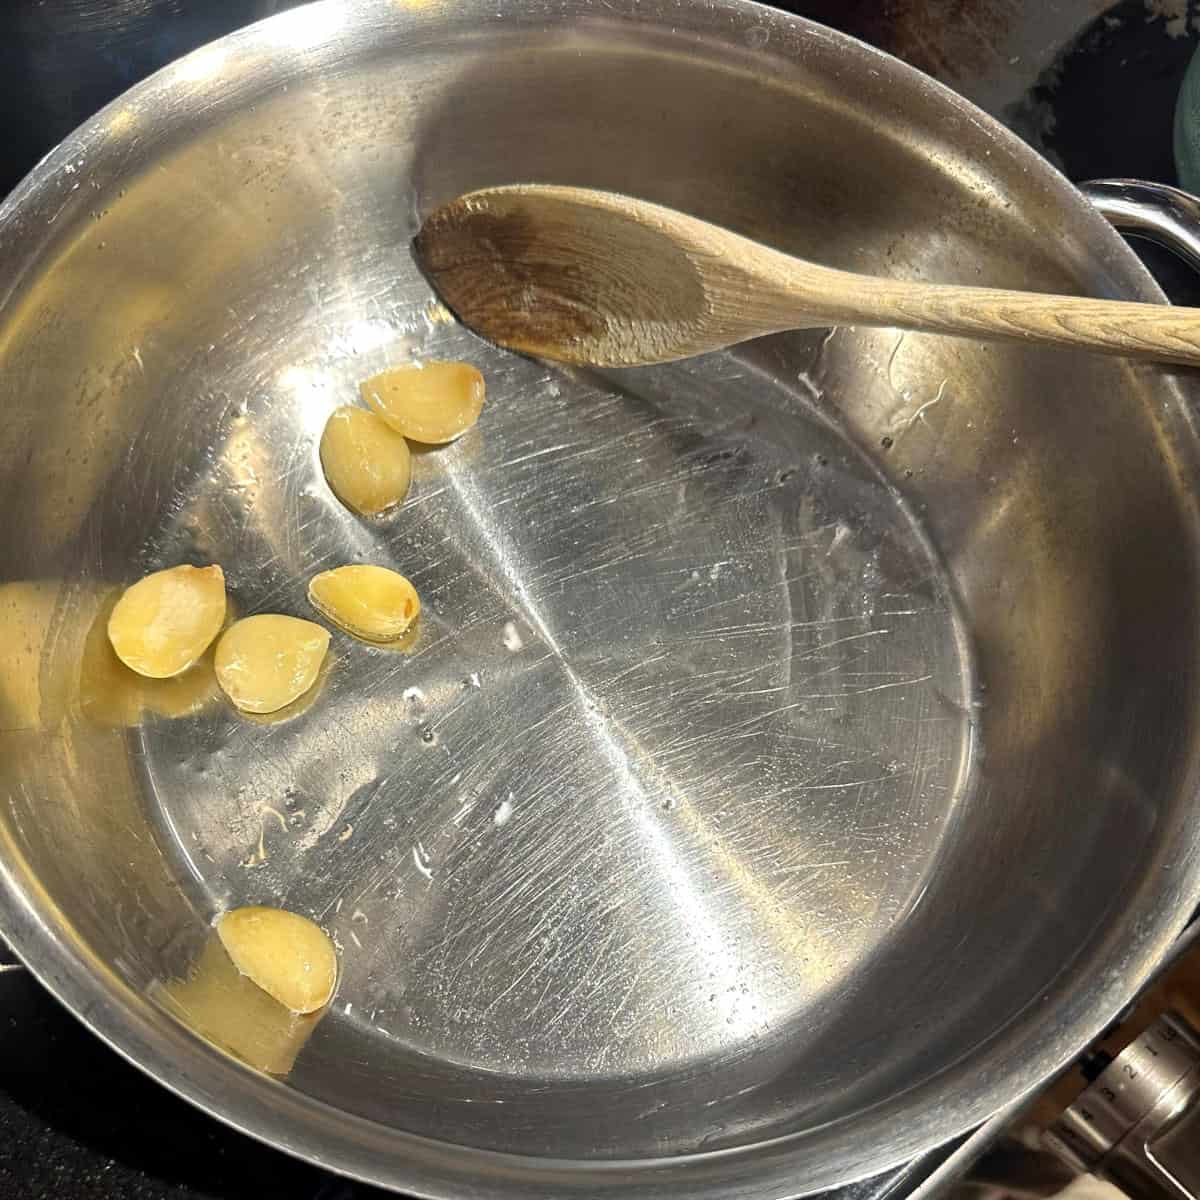 Garlic in oil in pan.